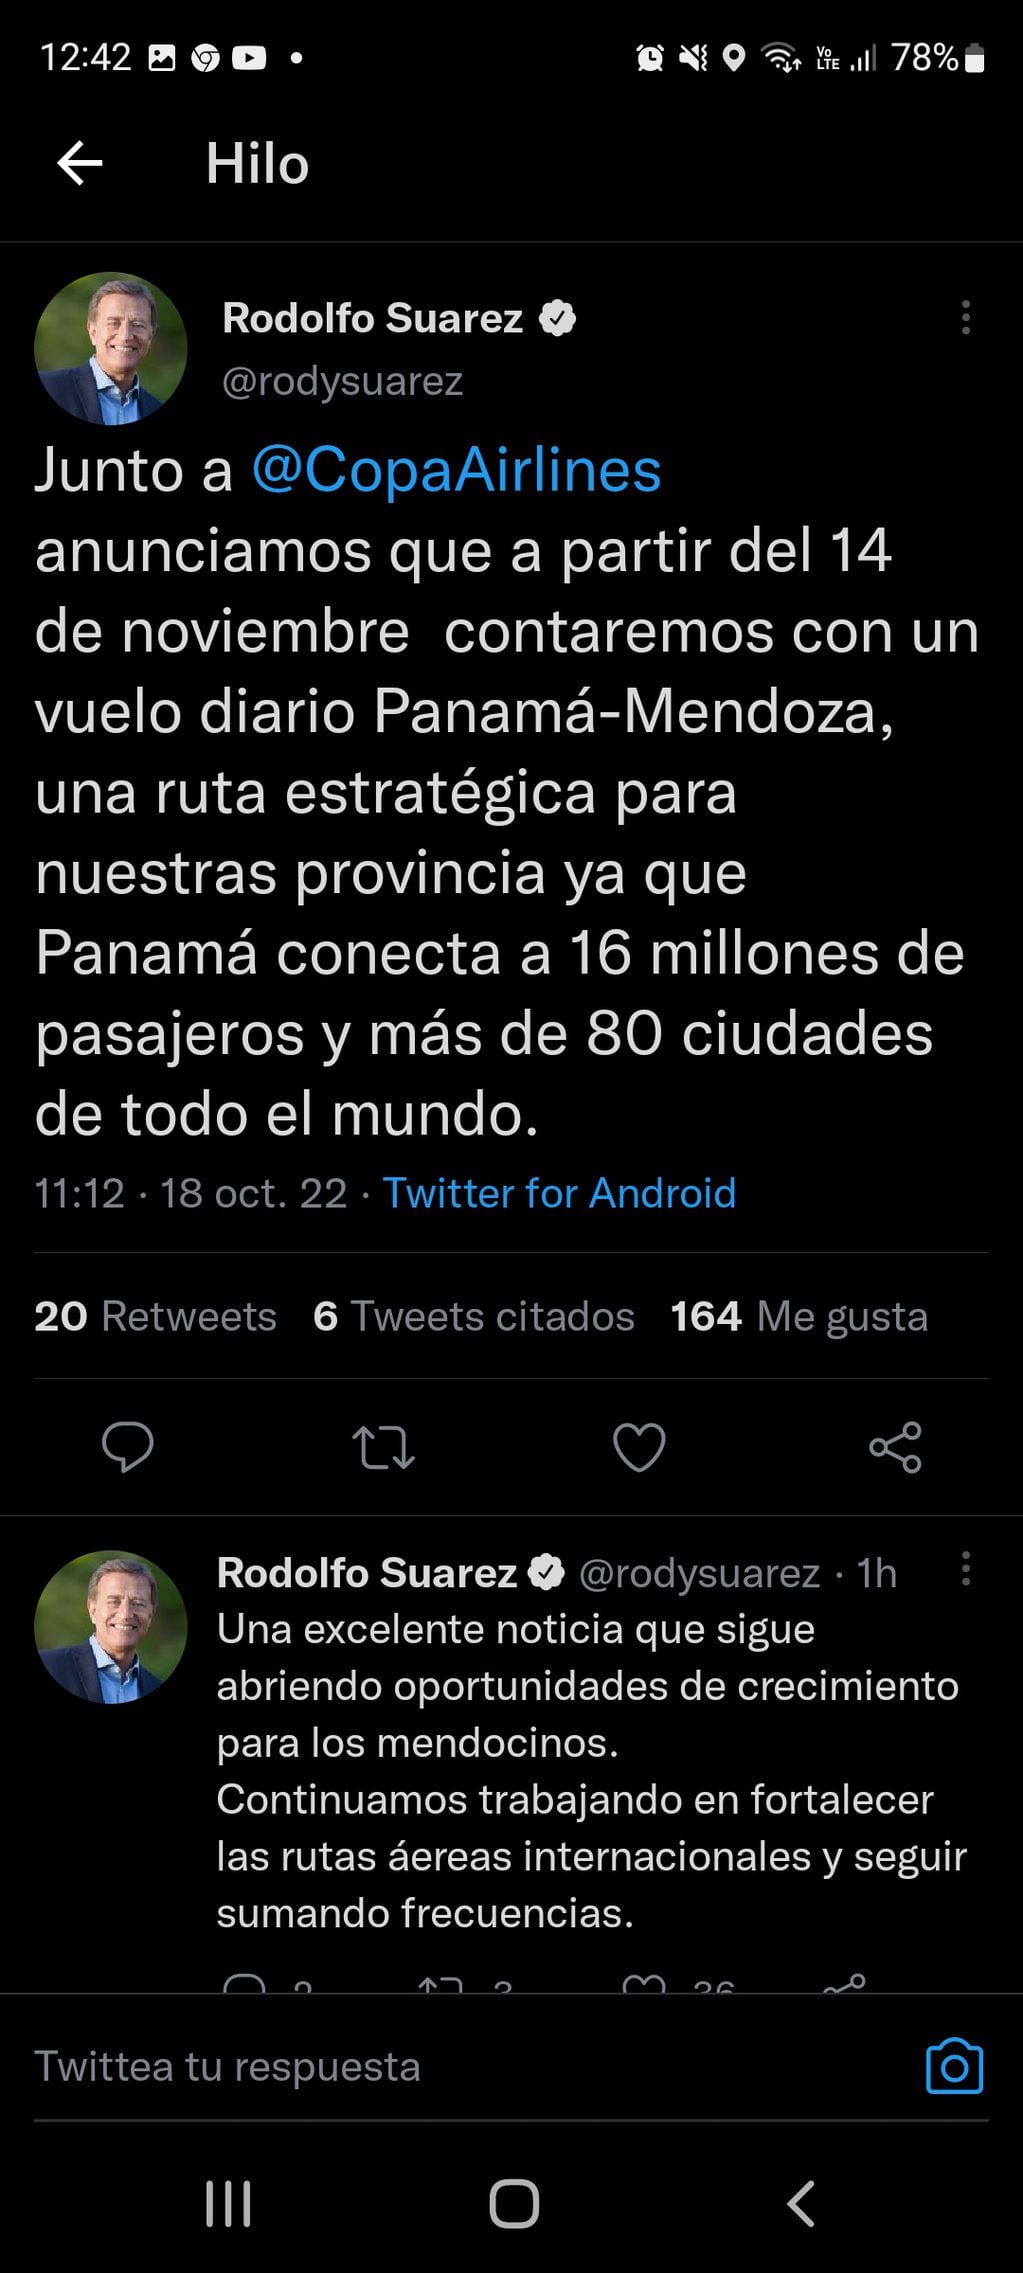 Rodolfo Suárez anunció una nueva ruta aérea: Panamá-Mendoza.